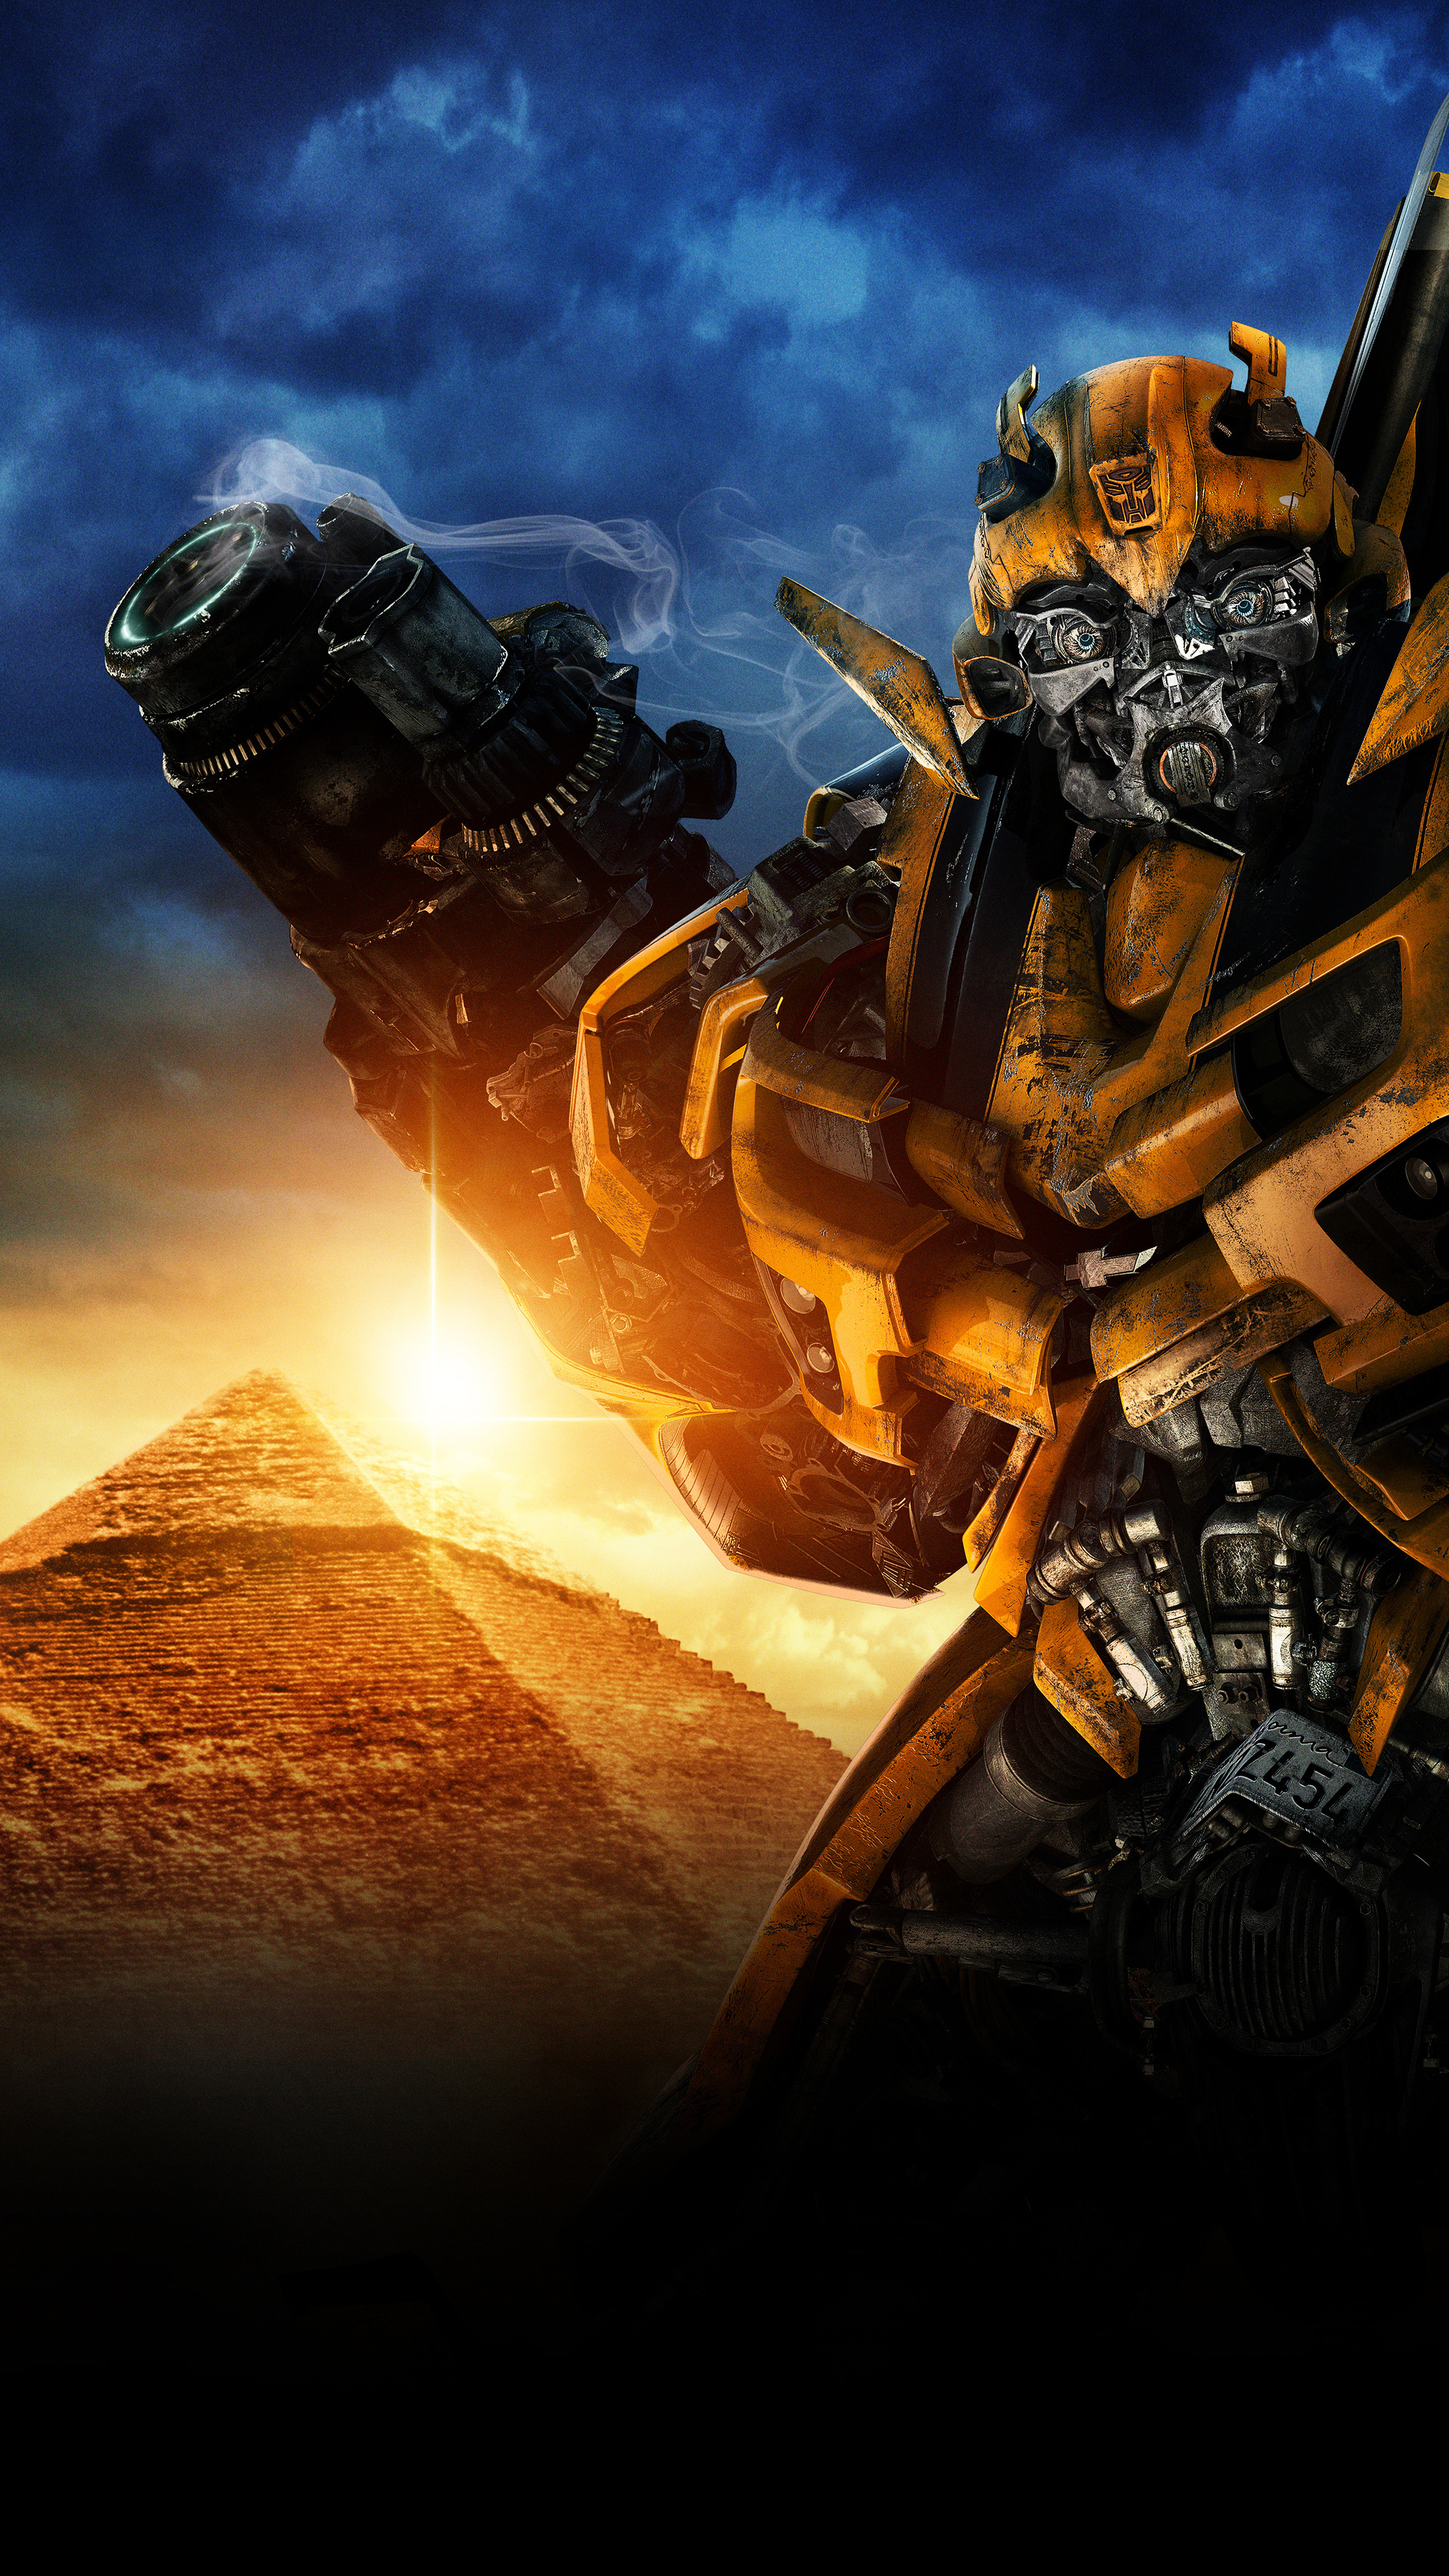 Transformers revenge, Fallen Sony Xperia, HD wallpapers, 2160x3840 4K Handy